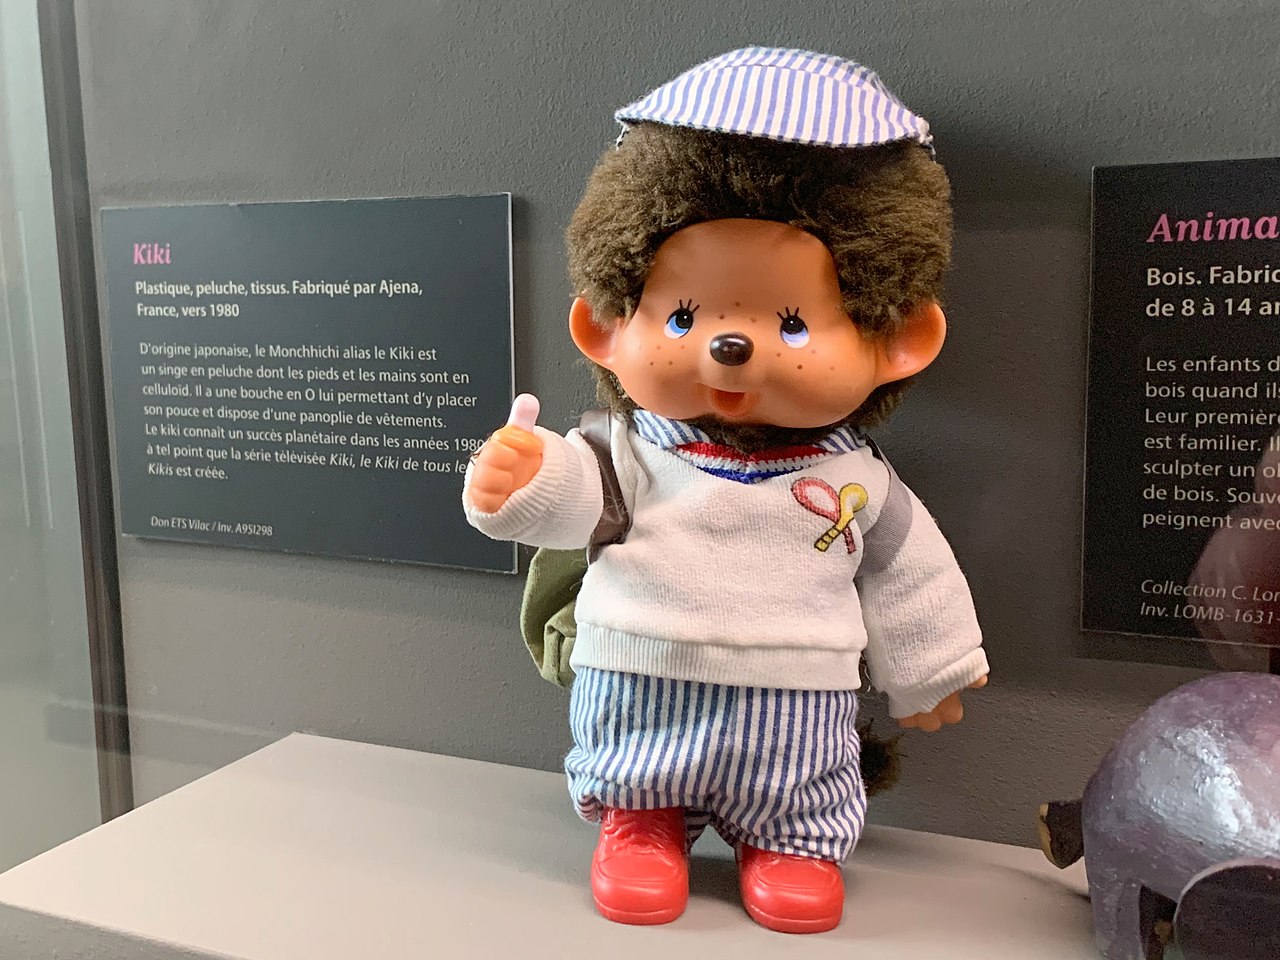 Kiki exposé au Musée du jouet de Moirans-en-Montagne